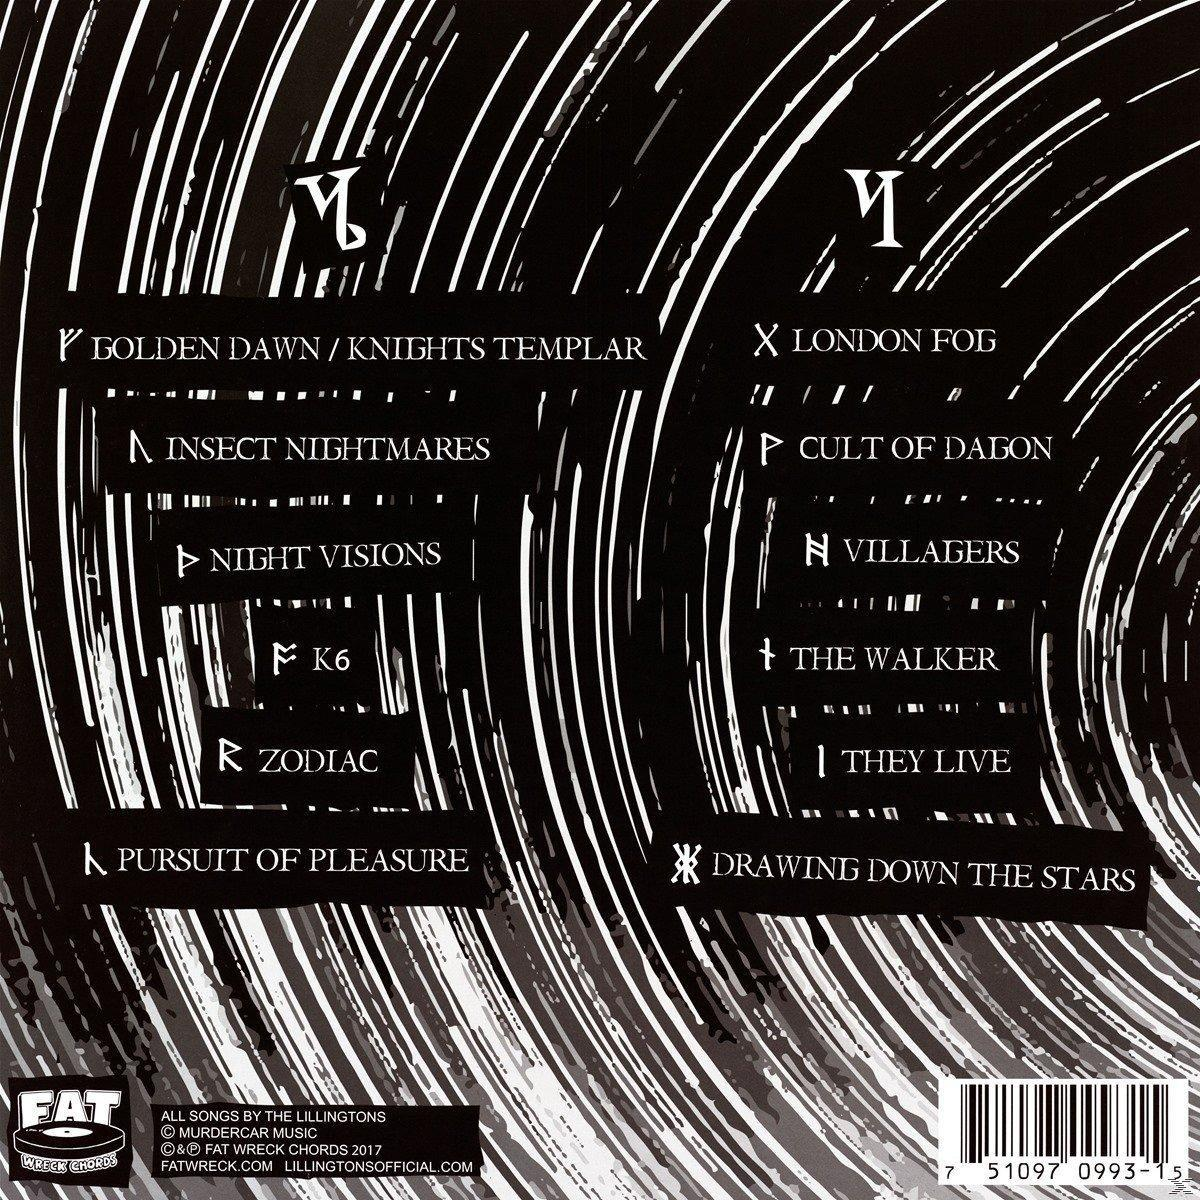 The Lillingtons - Stella Sapiente (Vinyl) 